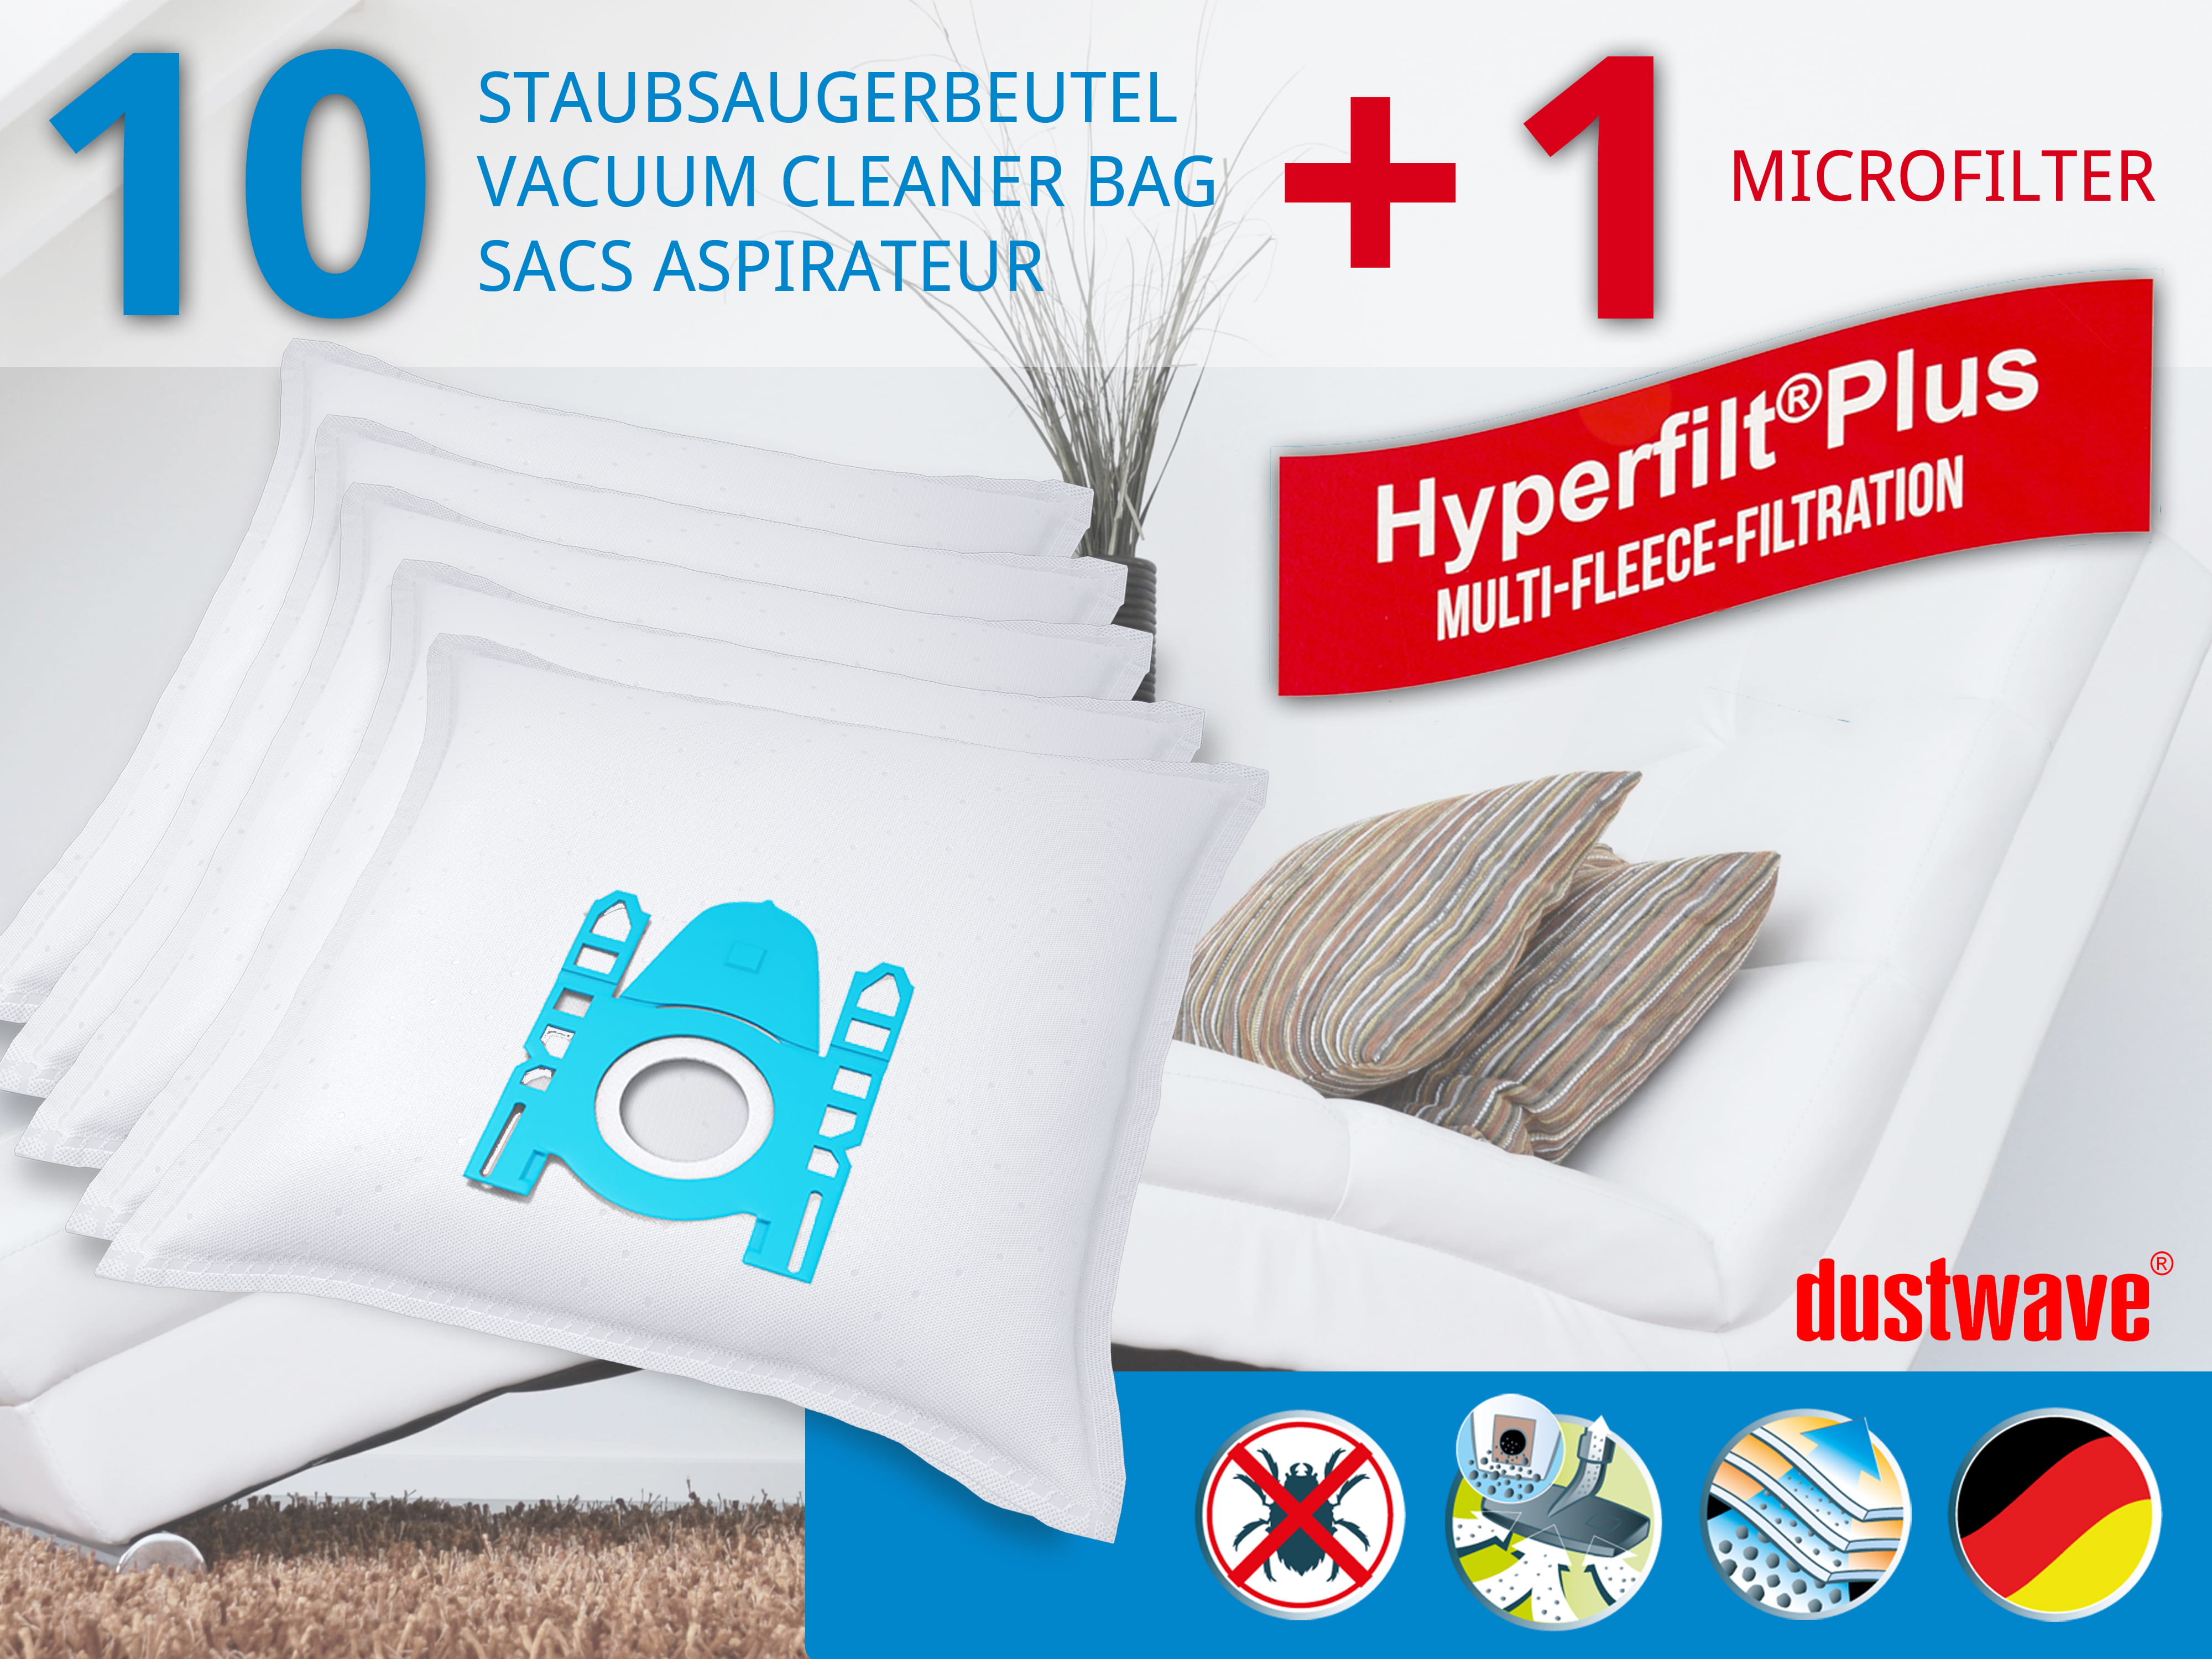 Dustwave® 10 Staubsaugerbeutel für AquaPur Adix - SI150, BASE - BA 2000 - hocheffizient, mehrlagiges Mikrovlies mit Hygieneverschluss - Made in Germany